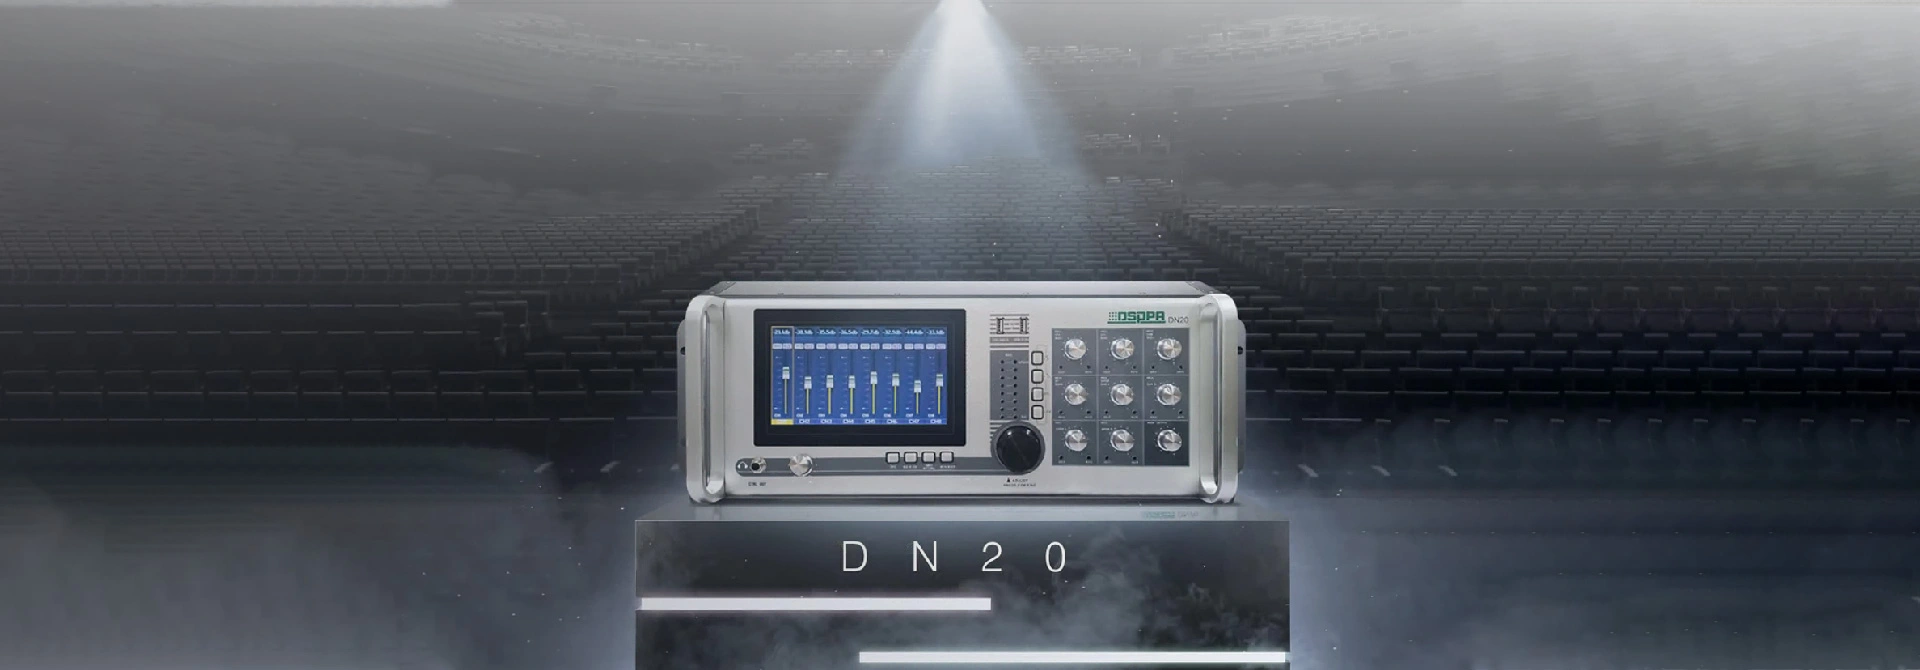 20 Channels na naka-mount na Digital Mixing Console Solution para sa Conference DN20